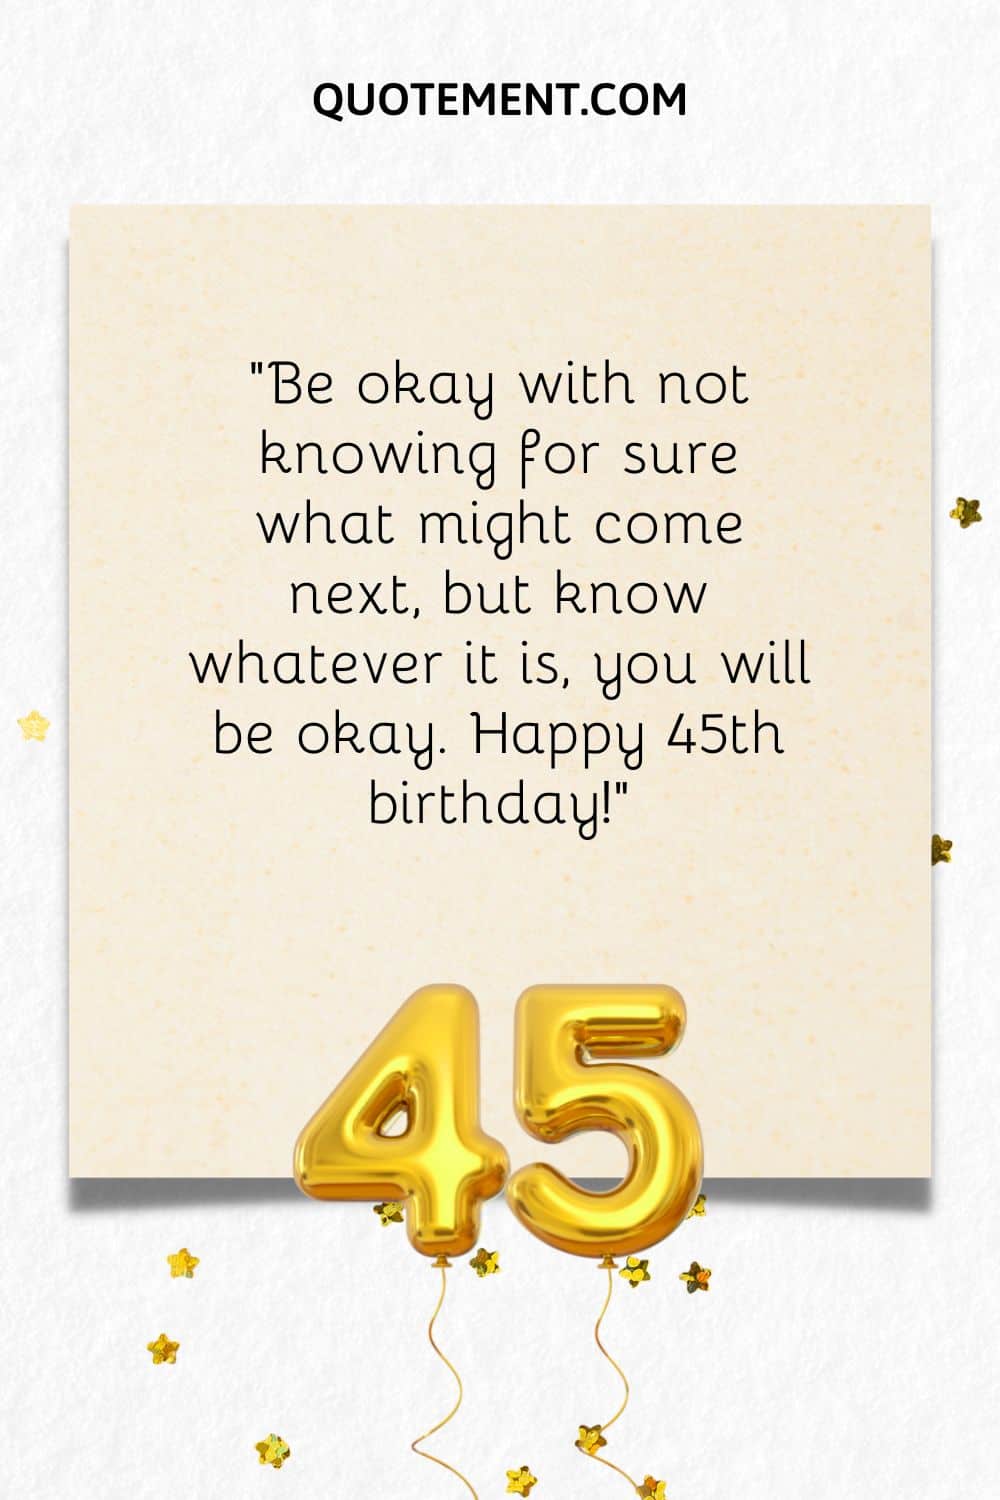 "Acepta no saber con seguridad lo que puede venir después, pero ten claro que, sea lo que sea, estarás bien. Feliz 45 cumpleaños".